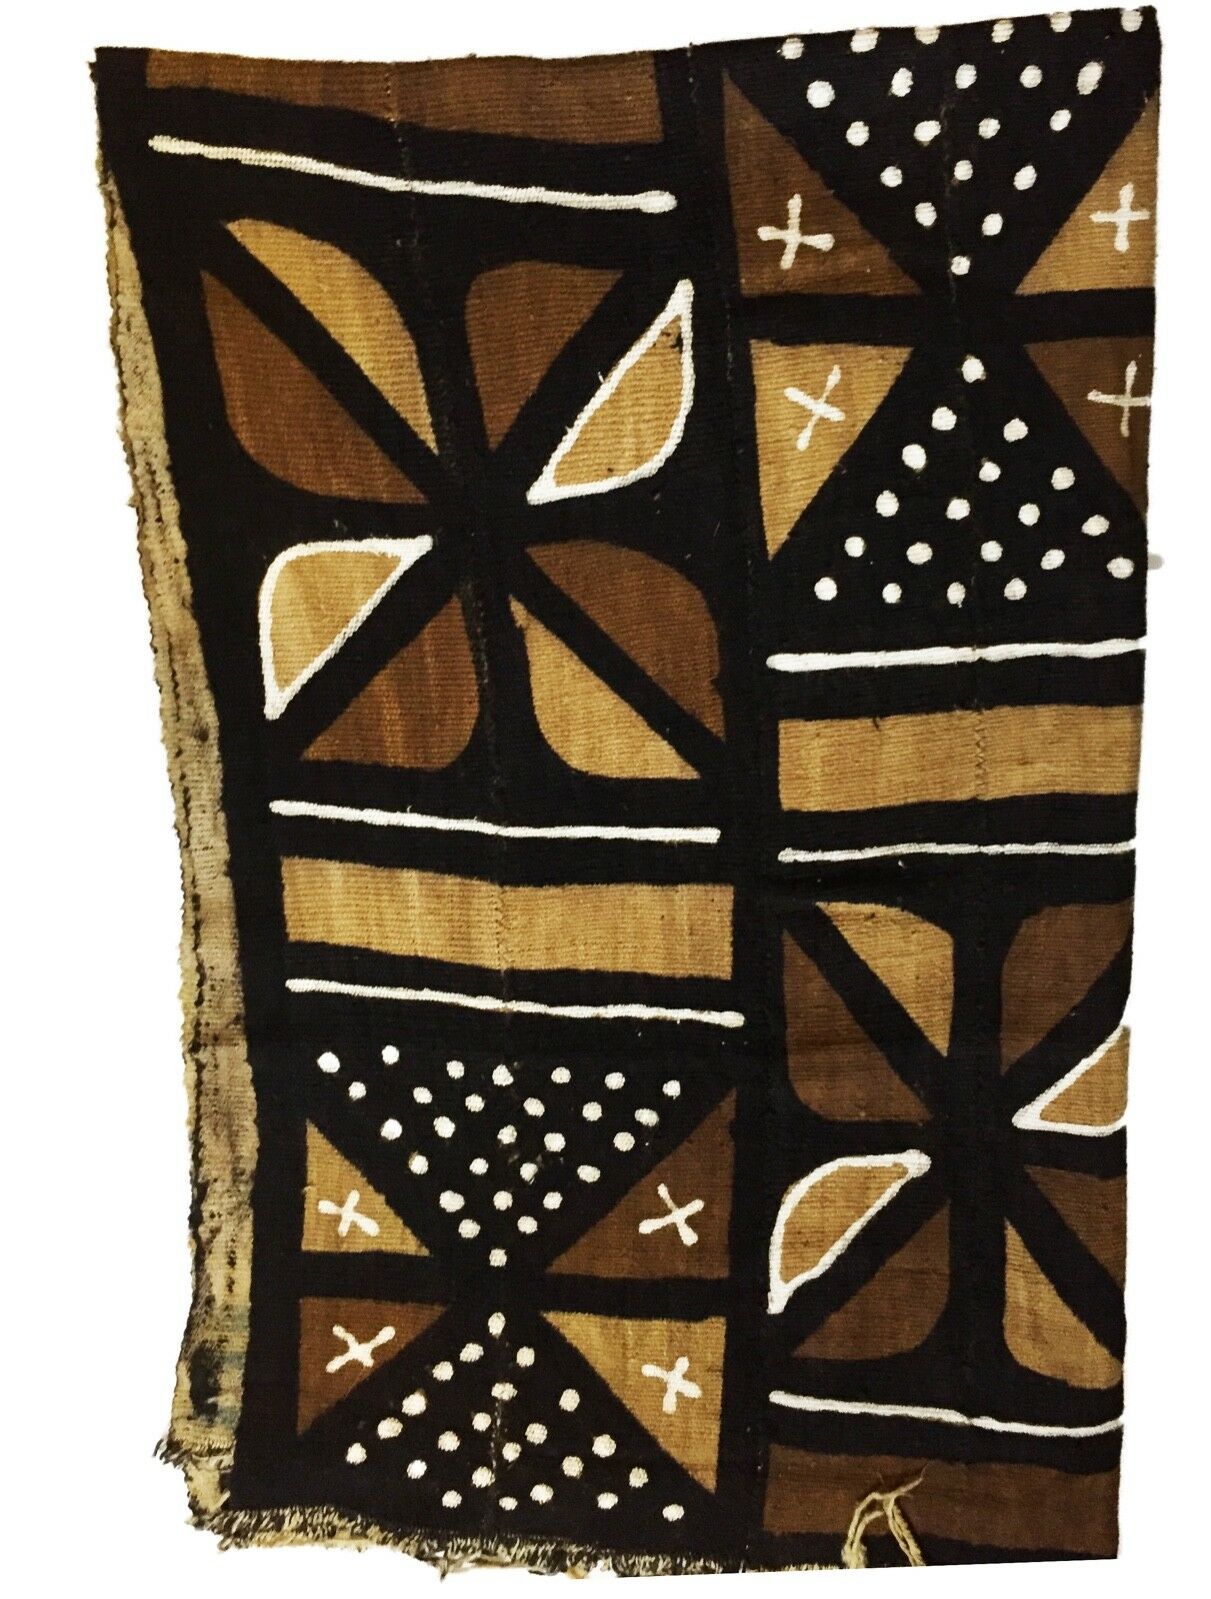 Superb Bogolan Mali Mud Cloth Textile 42" by 64" # 1810